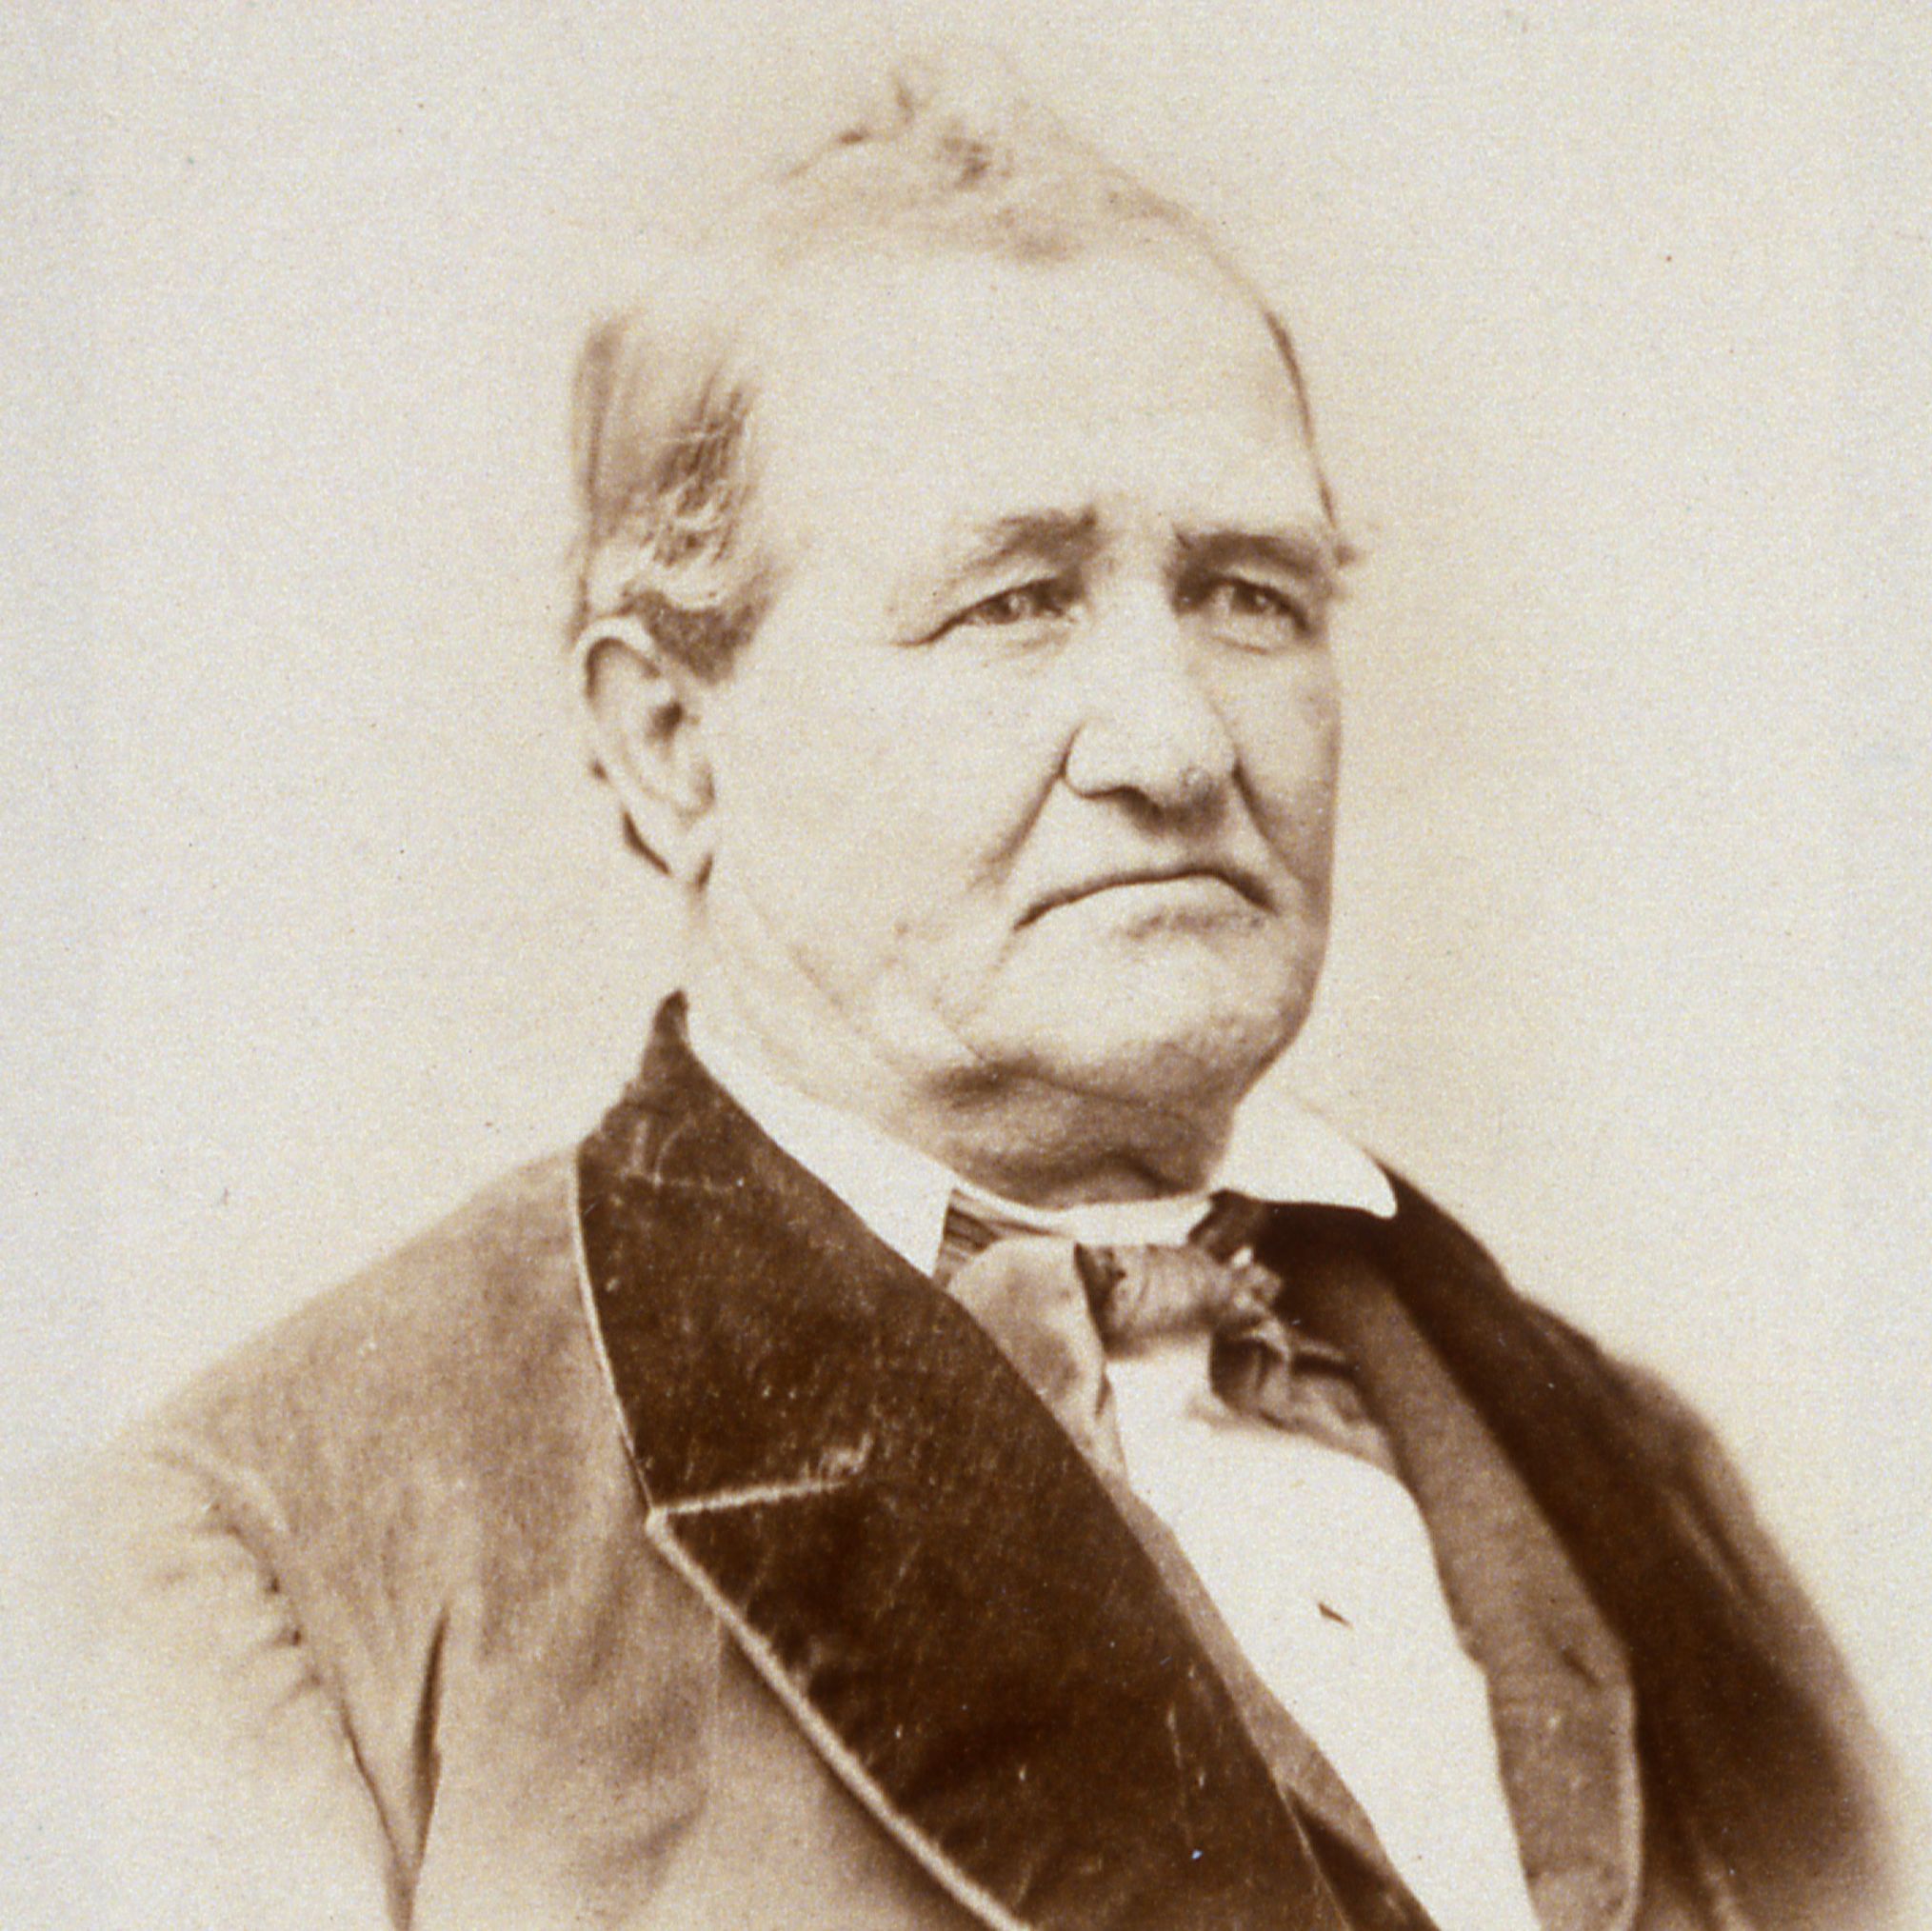 Dimick Baker Huntington (1808 - 1879) Profile